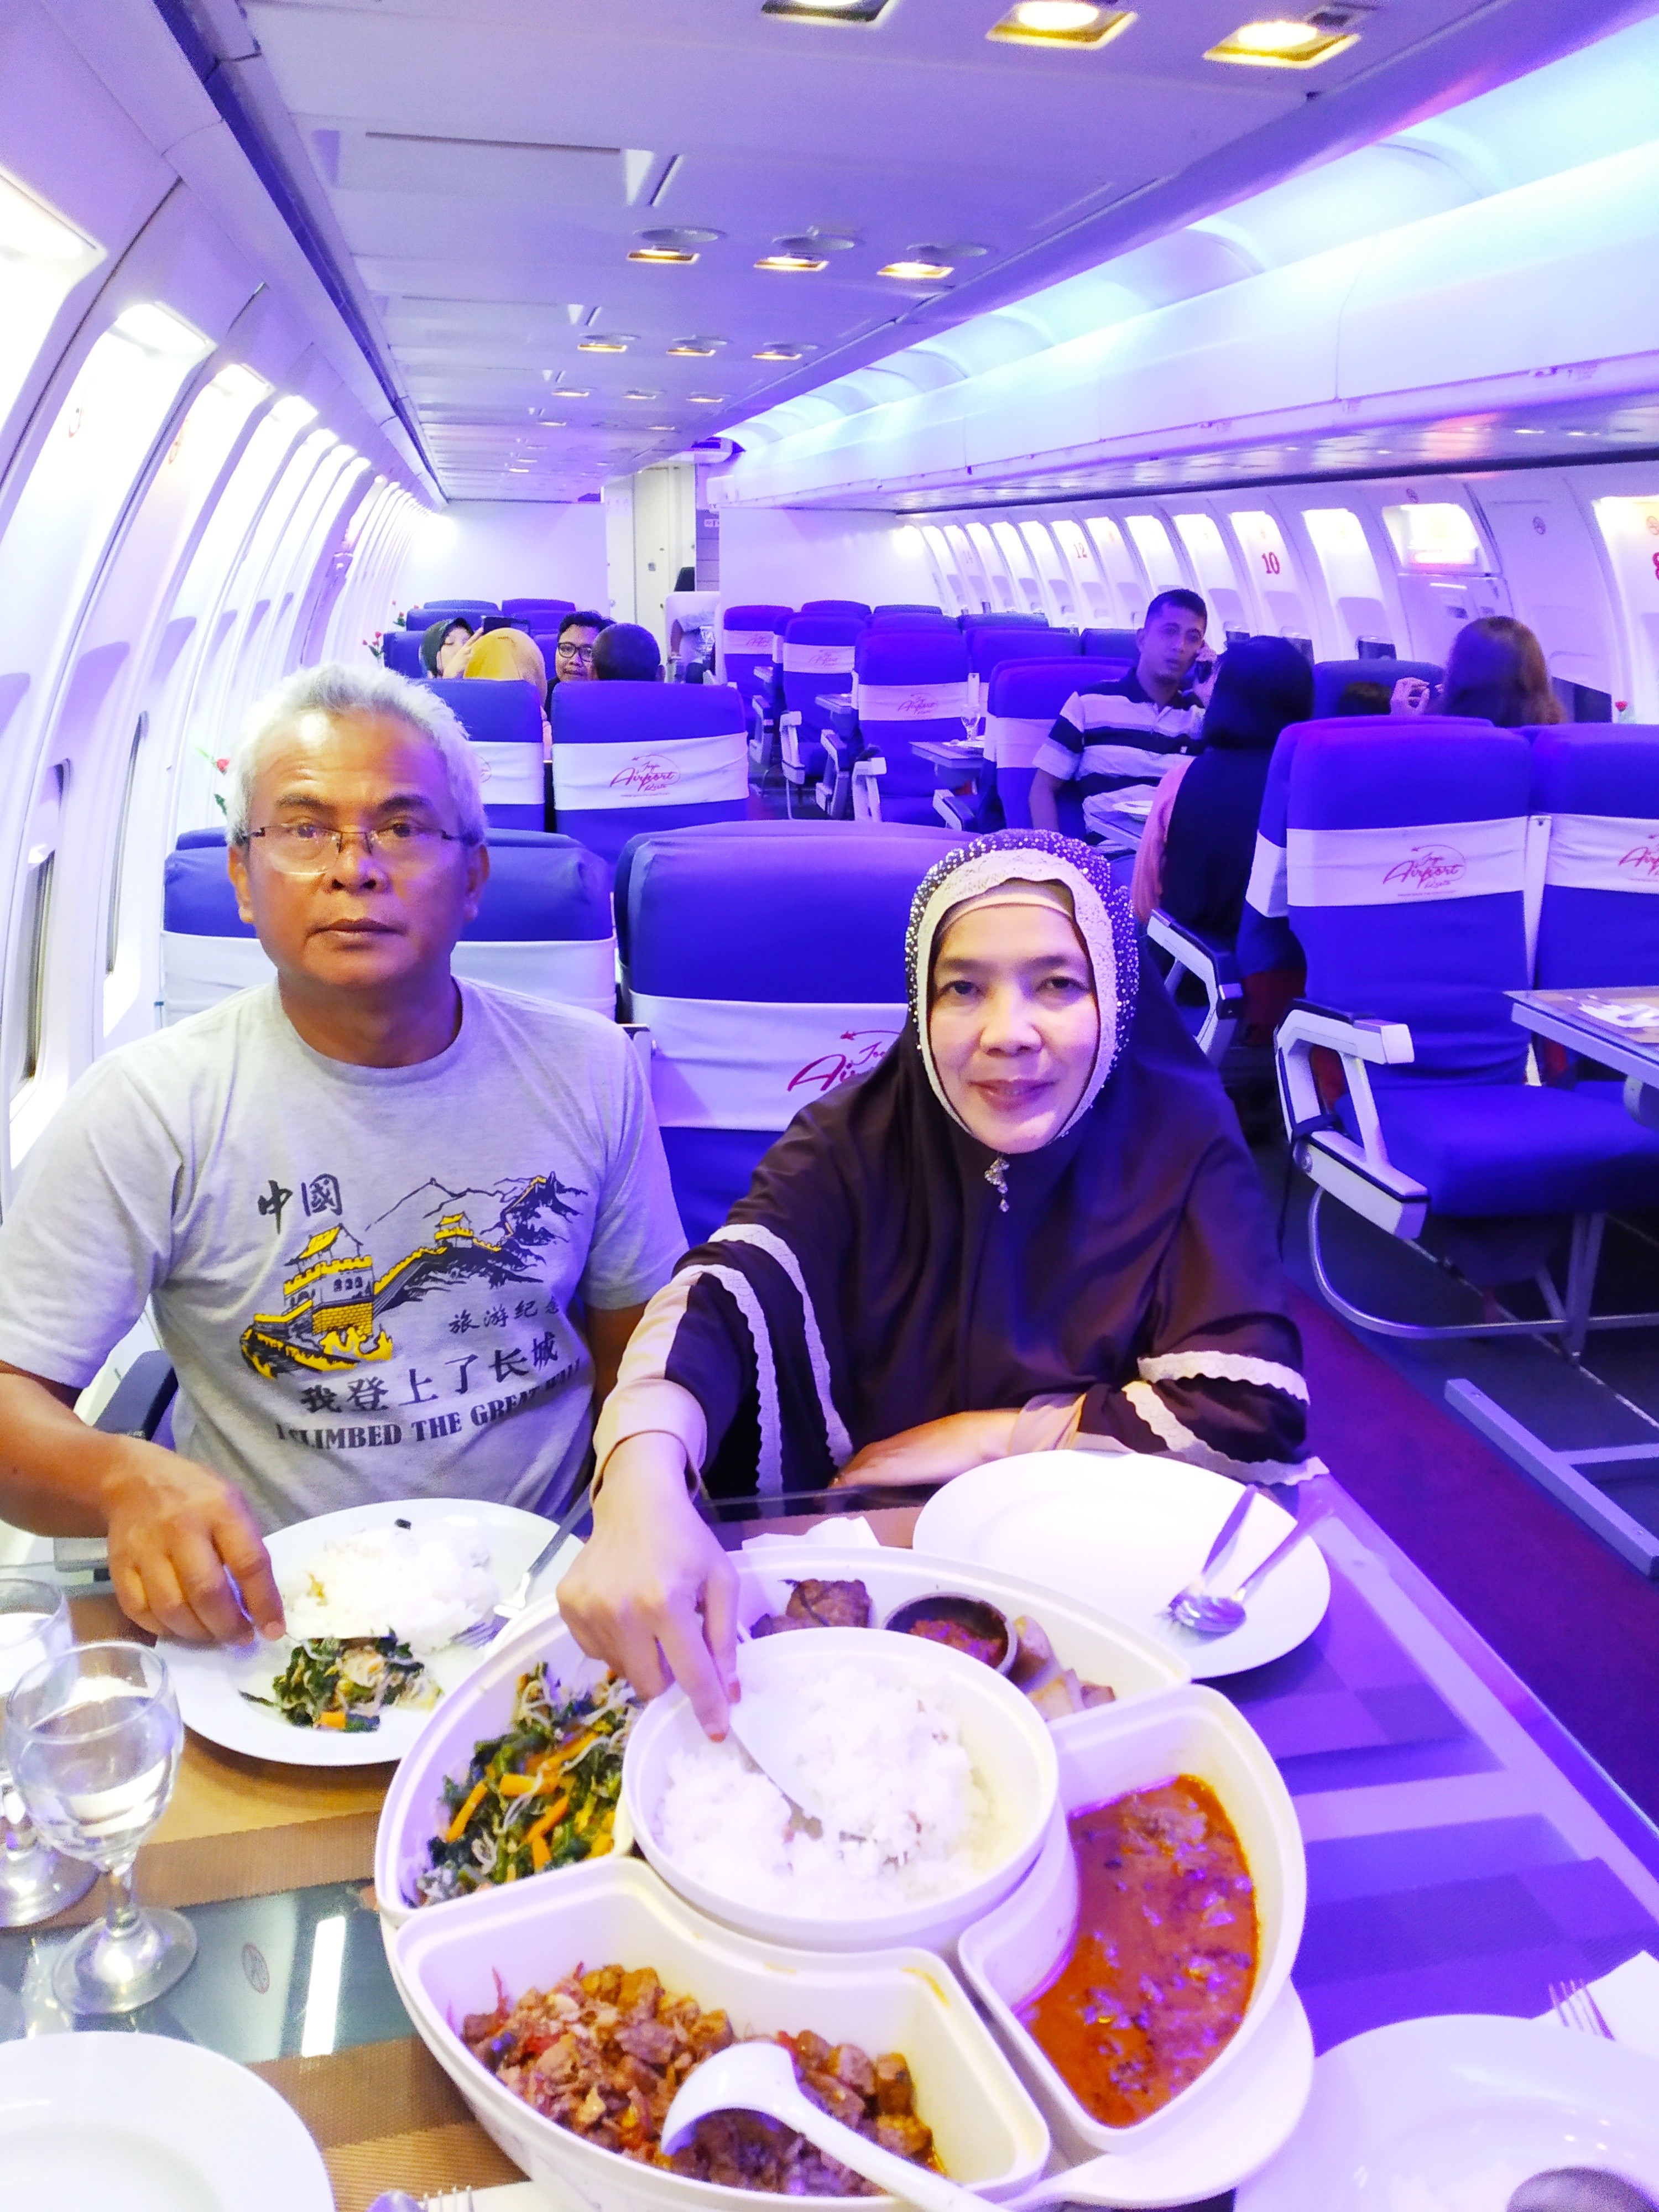 Jogja Airport Resto, Dinner di Pesawat Tanpa Terbang!